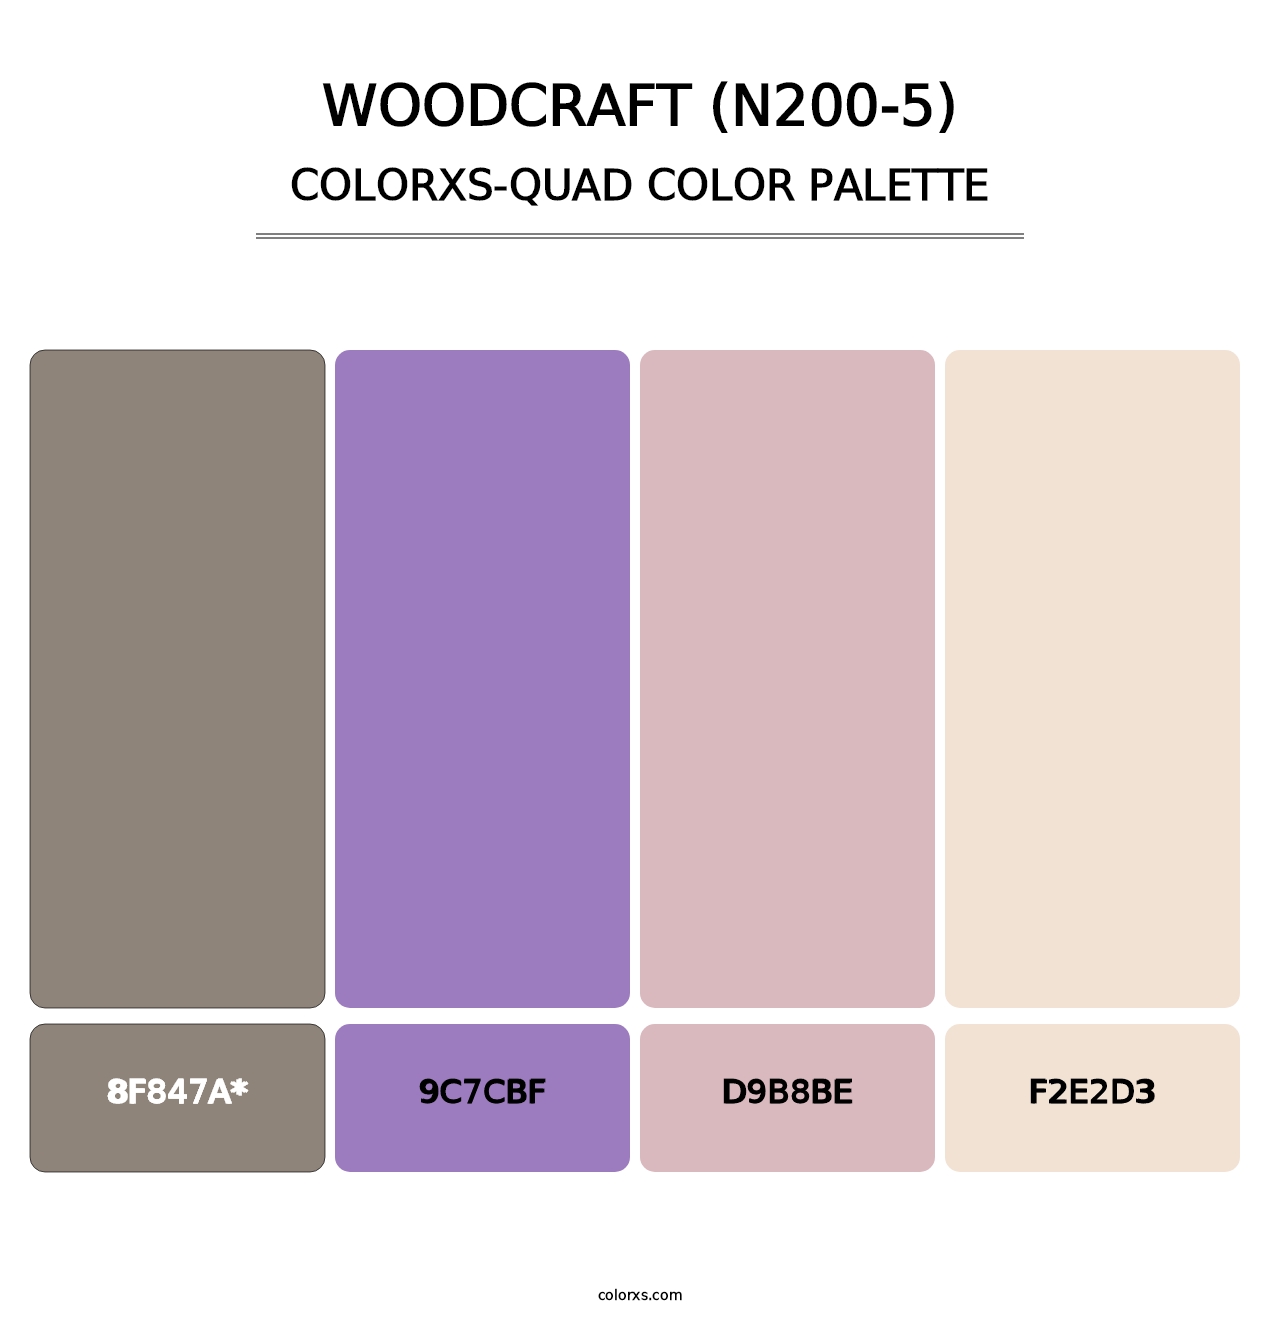 Woodcraft (N200-5) - Colorxs Quad Palette